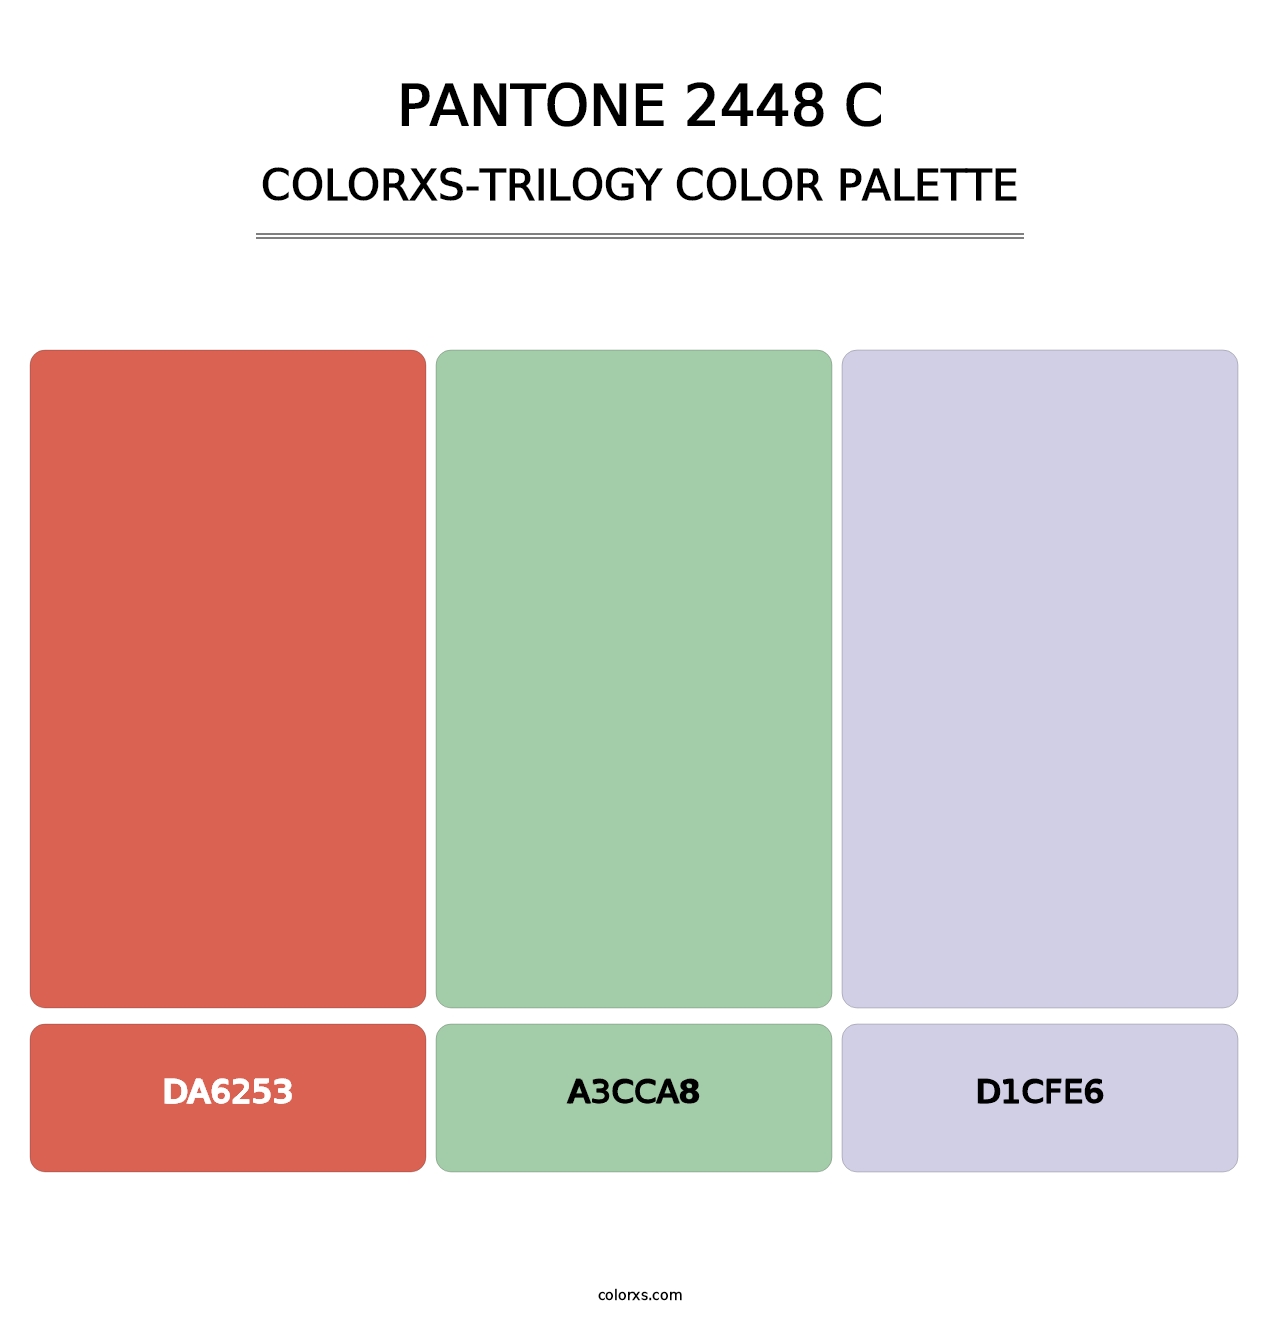 PANTONE 2448 C - Colorxs Trilogy Palette